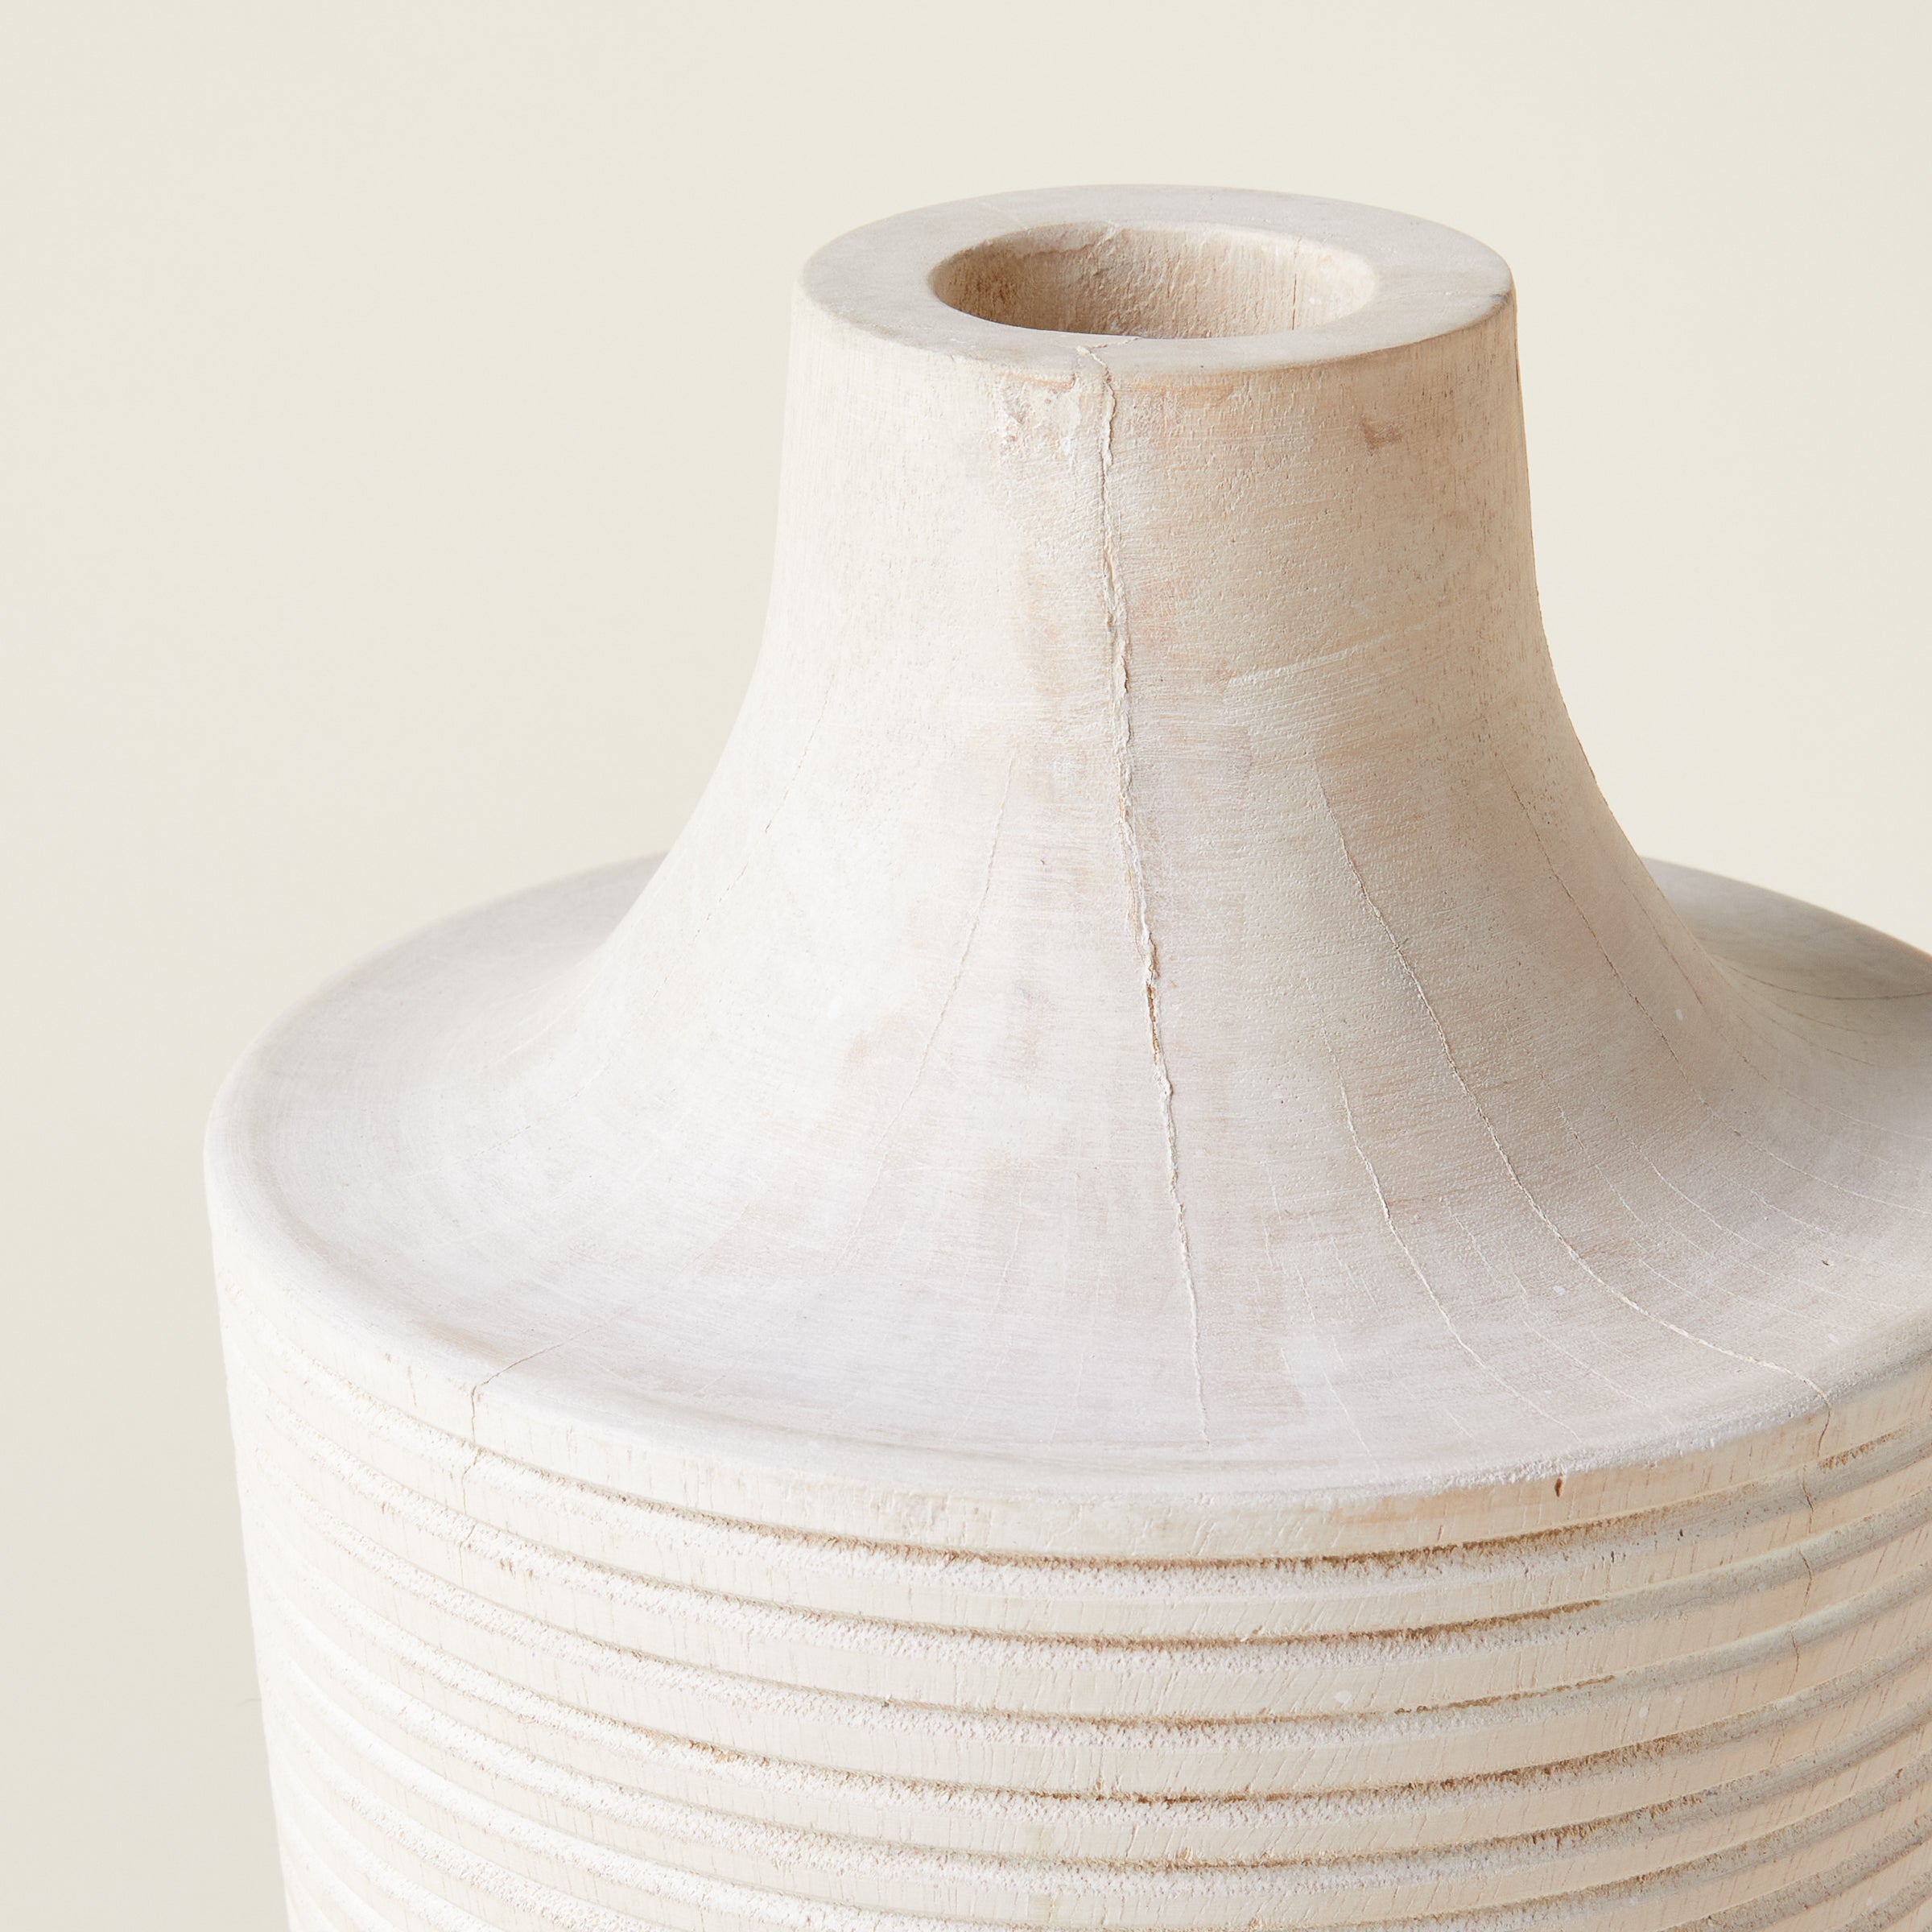 Carved Mango Wood Vase